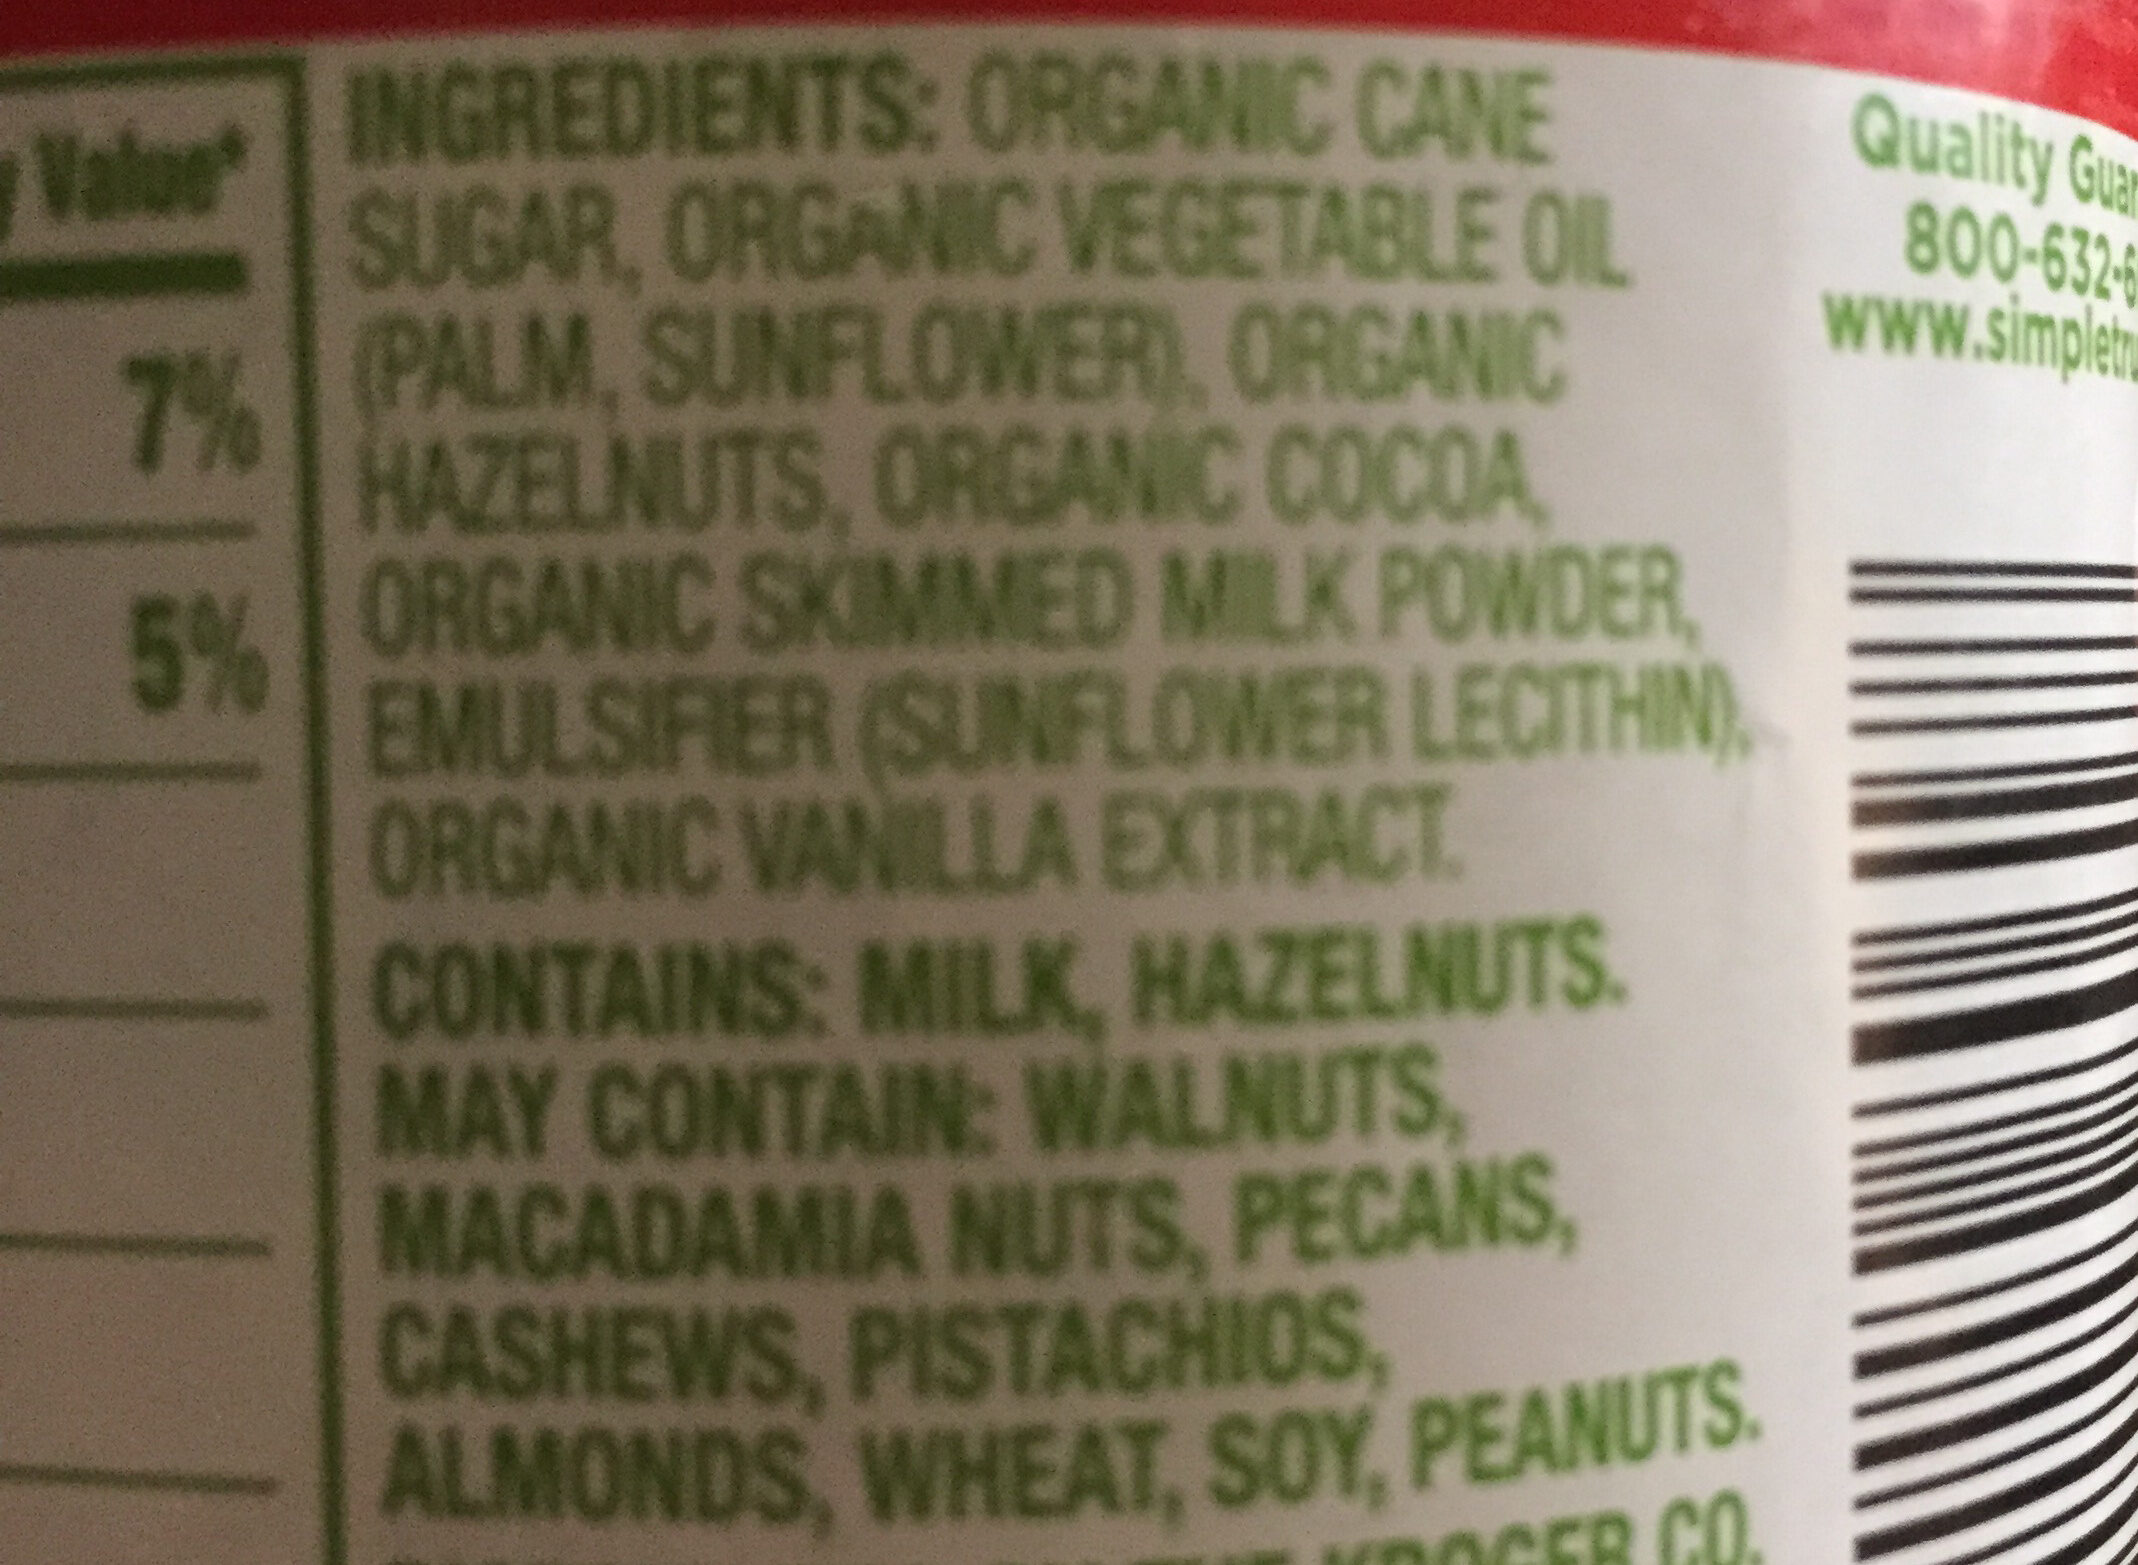 Creamy hazelnut spread - Ingredients